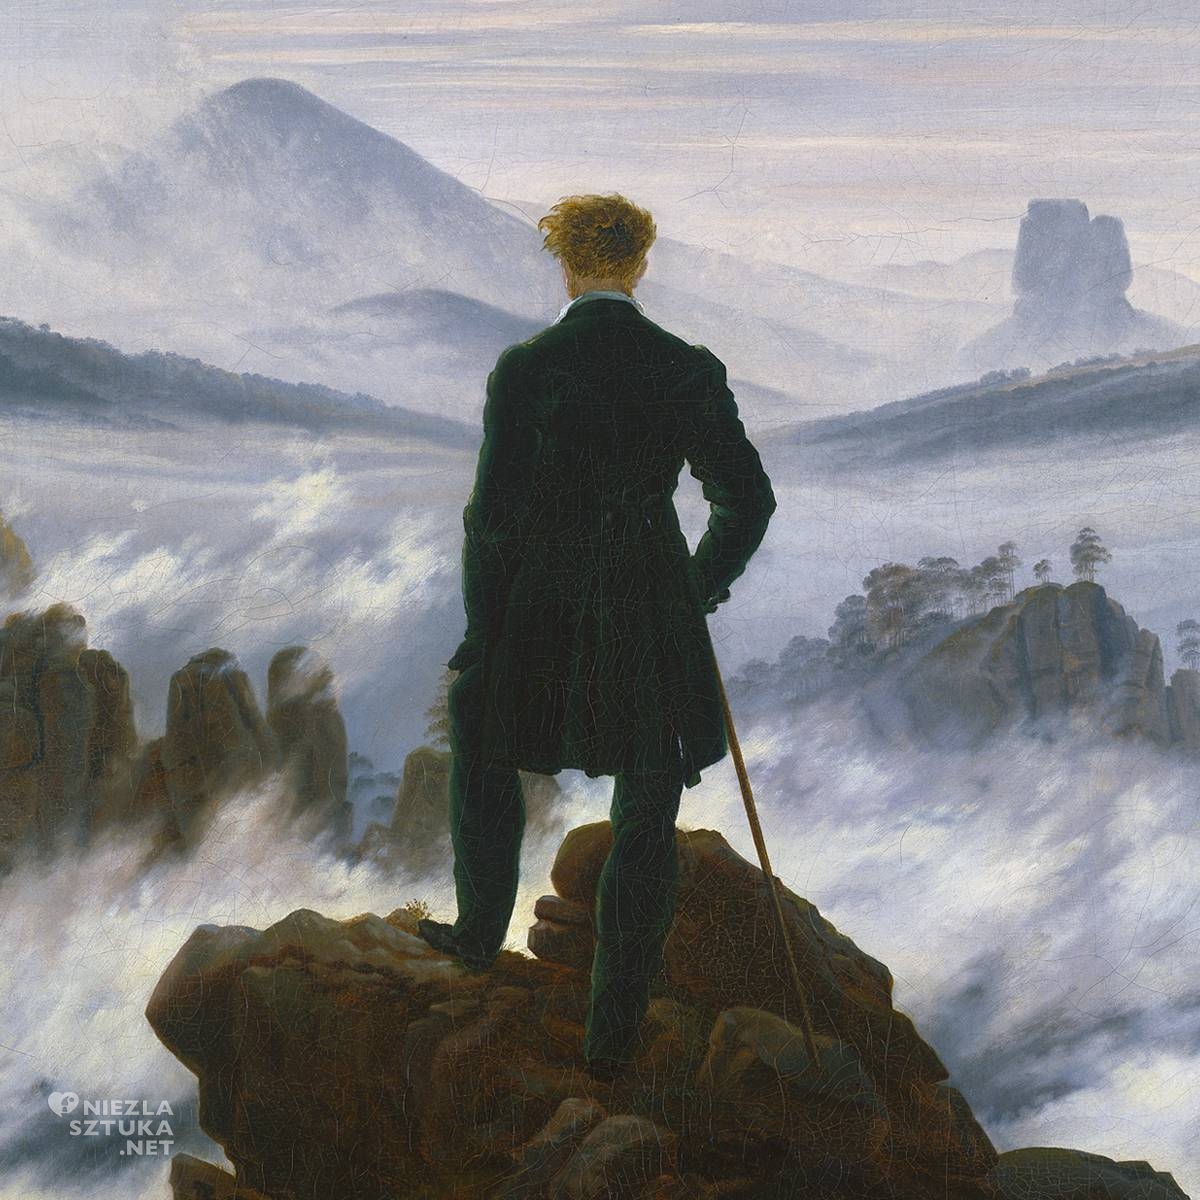 Caspar David Friedrich Wędrowiec nad morzem mgły, Niezła sztuka